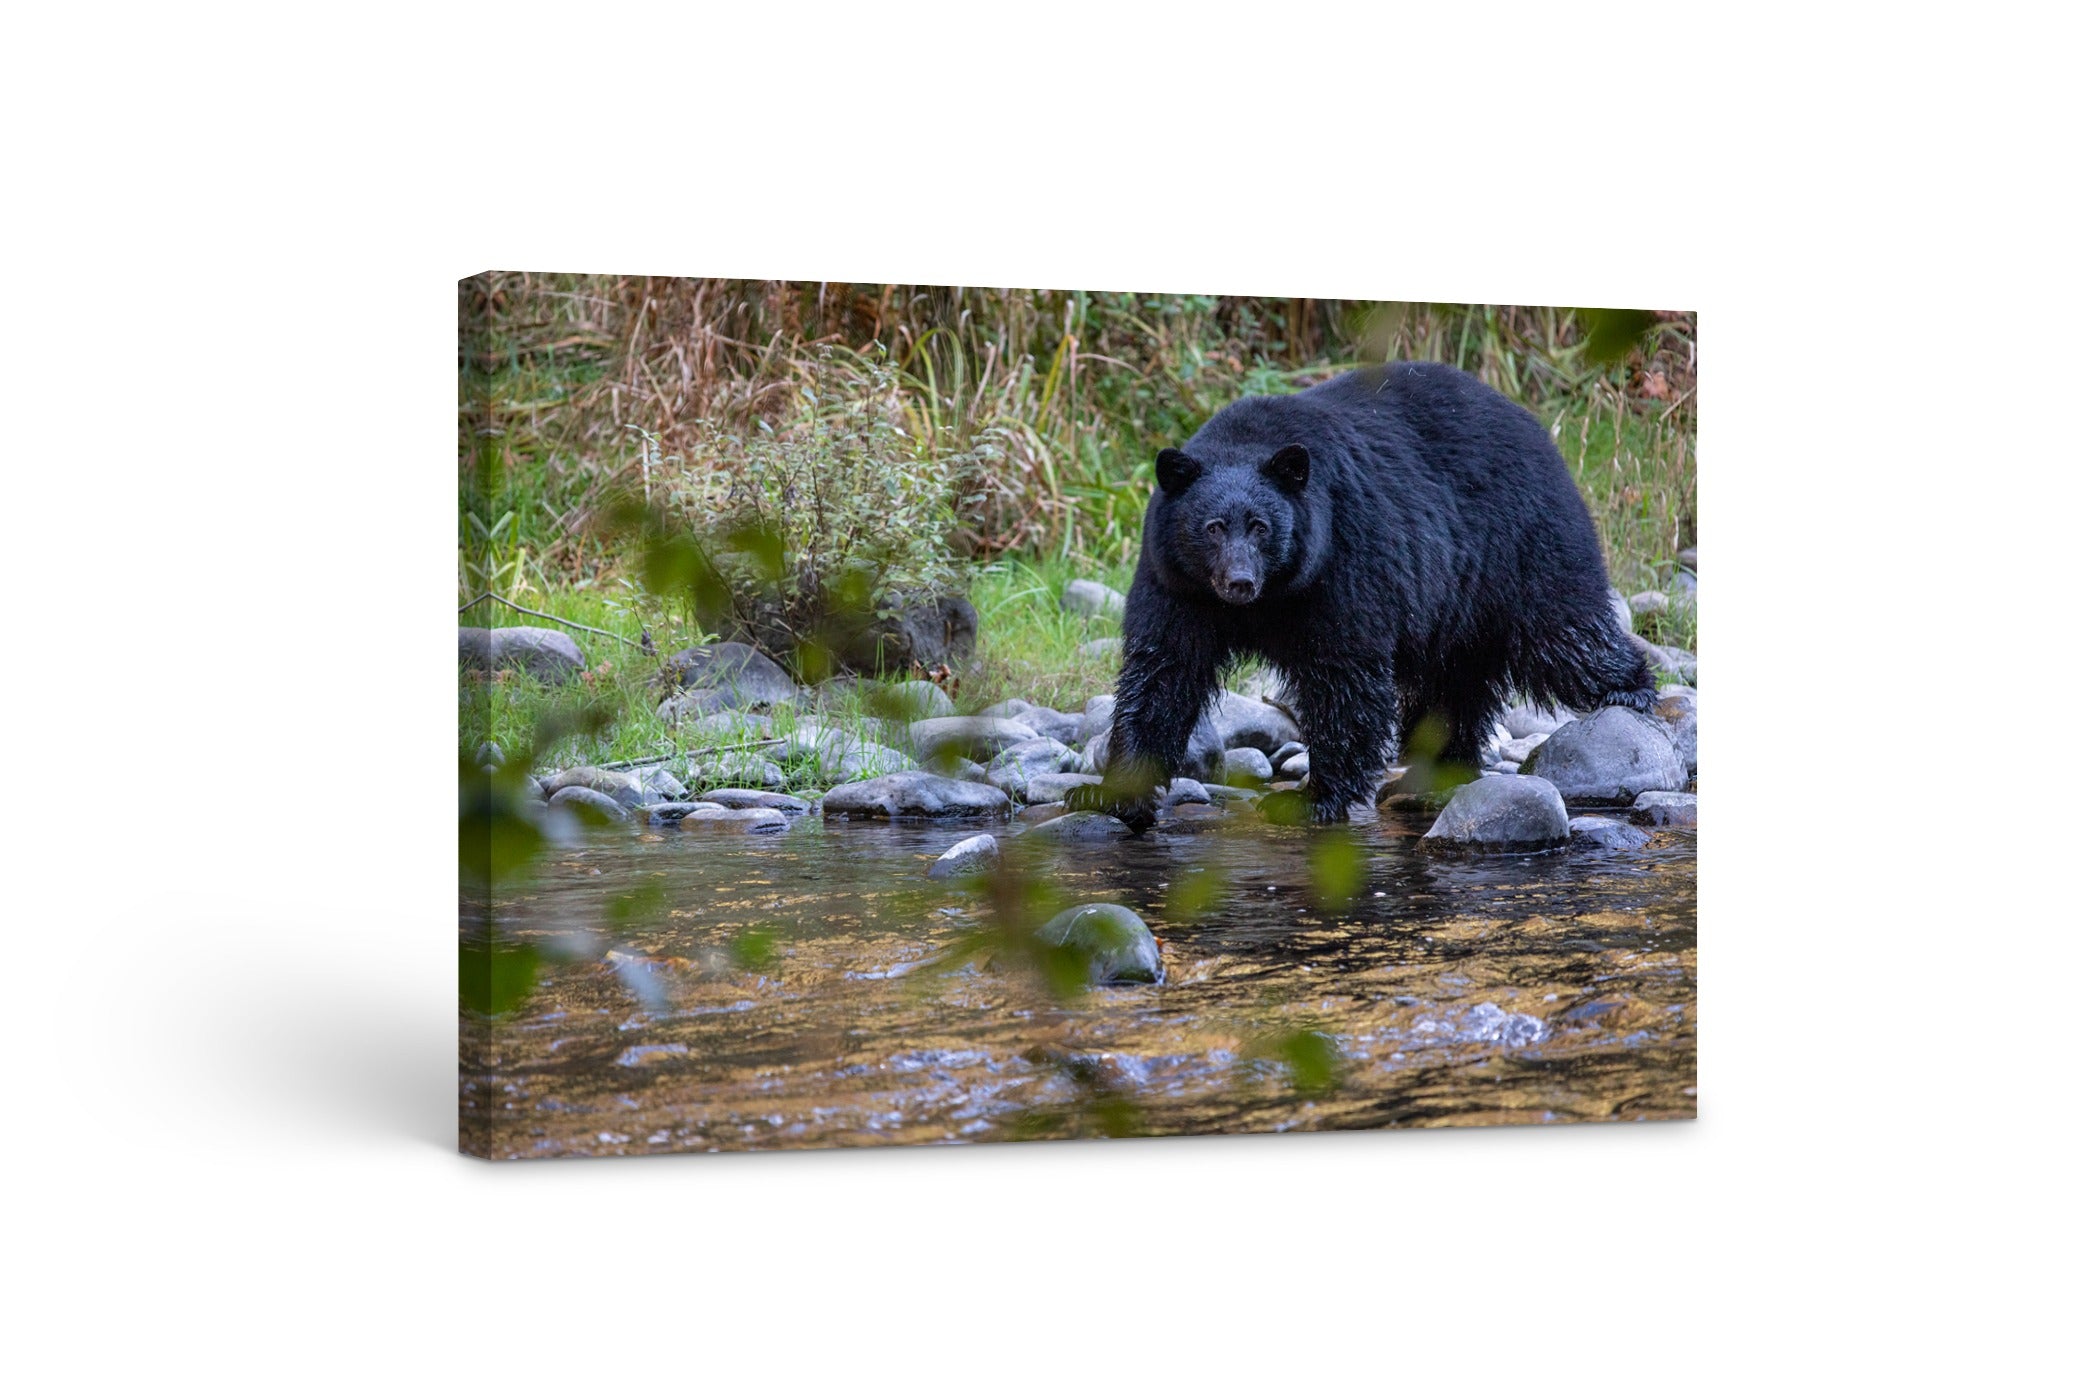 Black Bear in the River 24x36"